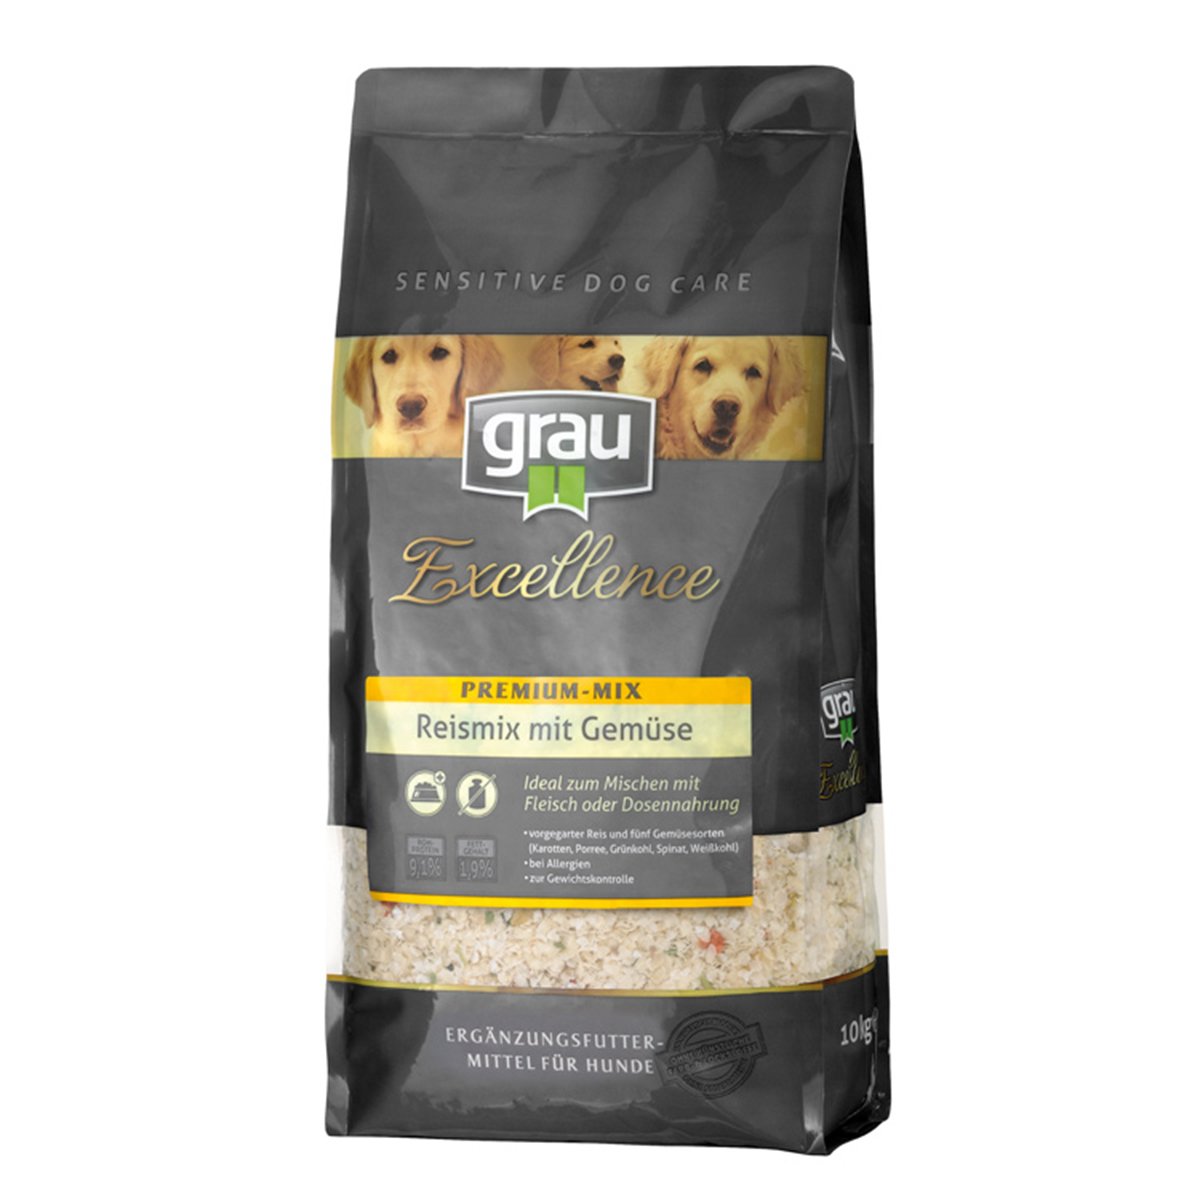 Grau Excellence Hunde-Trockenfutter Premium-Mix Reismix mit Gemüse 2x10kg von Grau